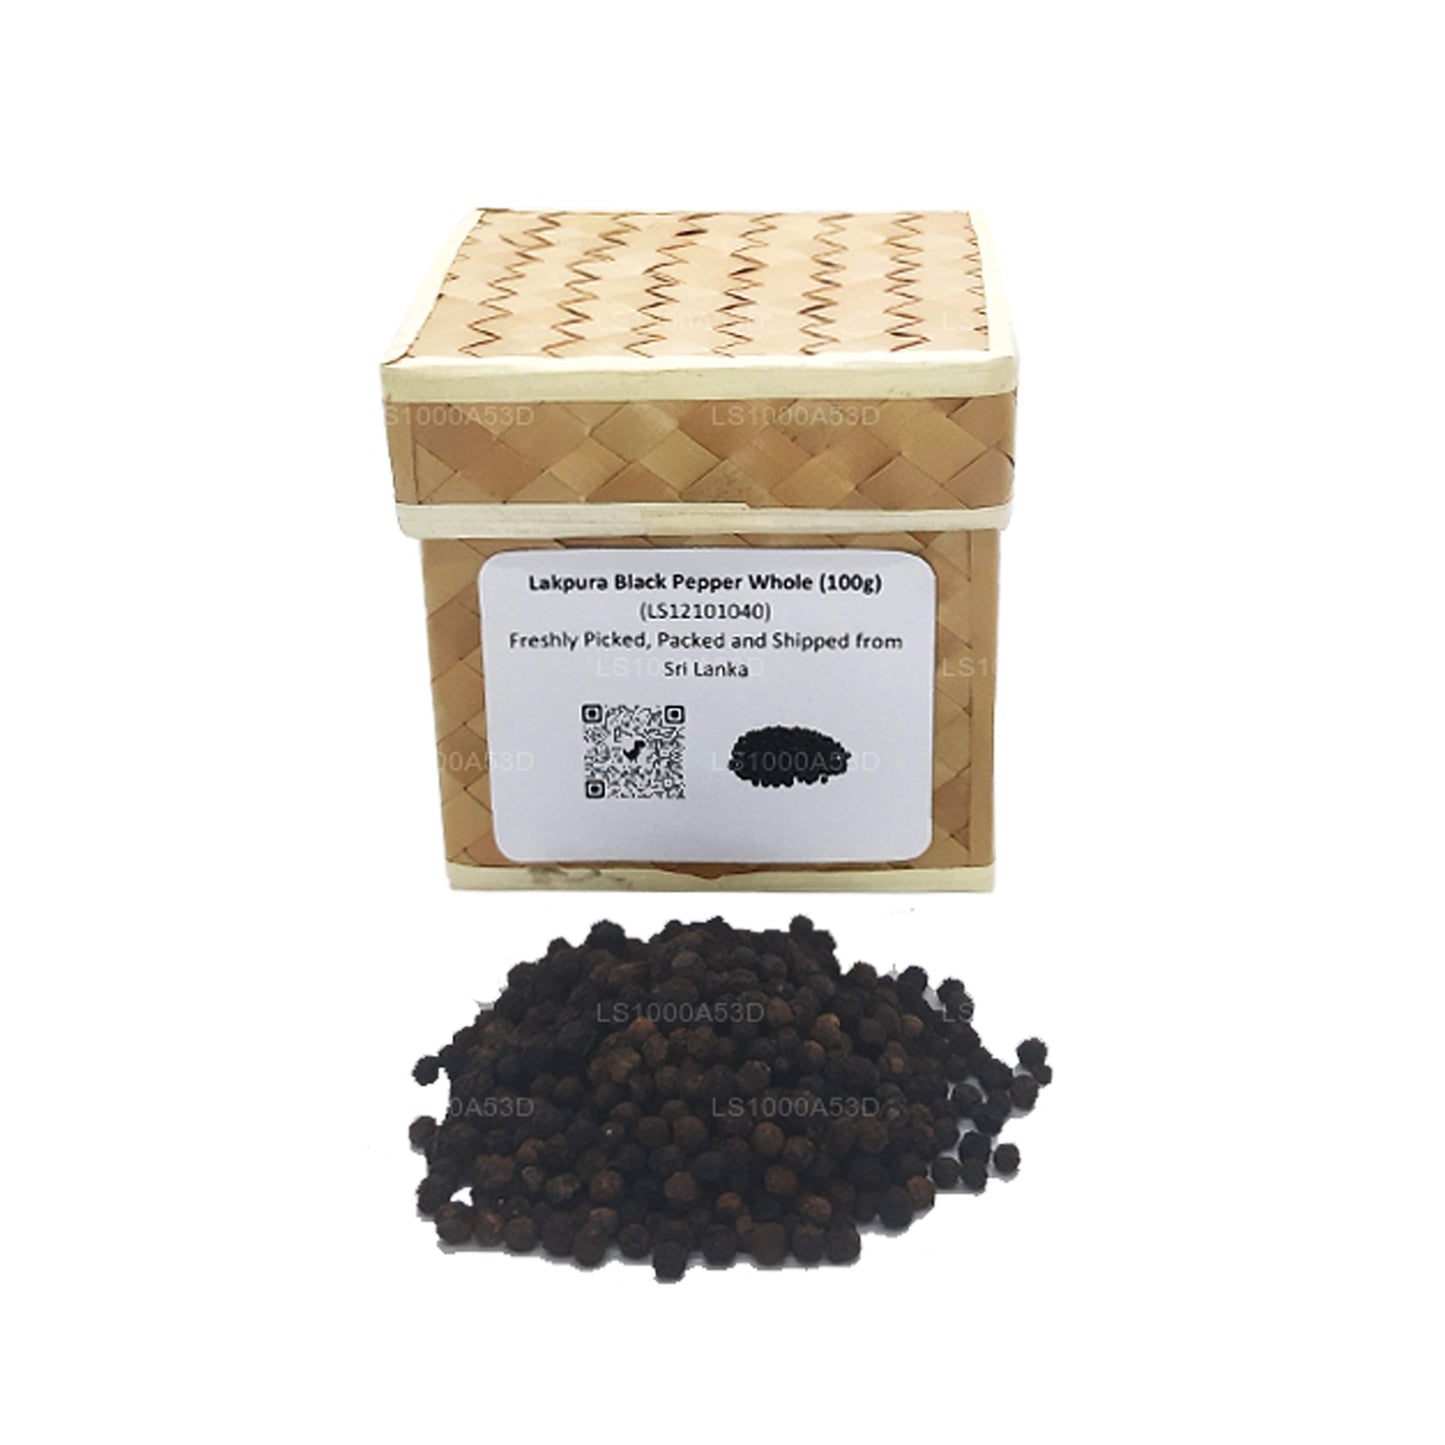 Lakpura zwarte peper in zijn geheel (100g) doos